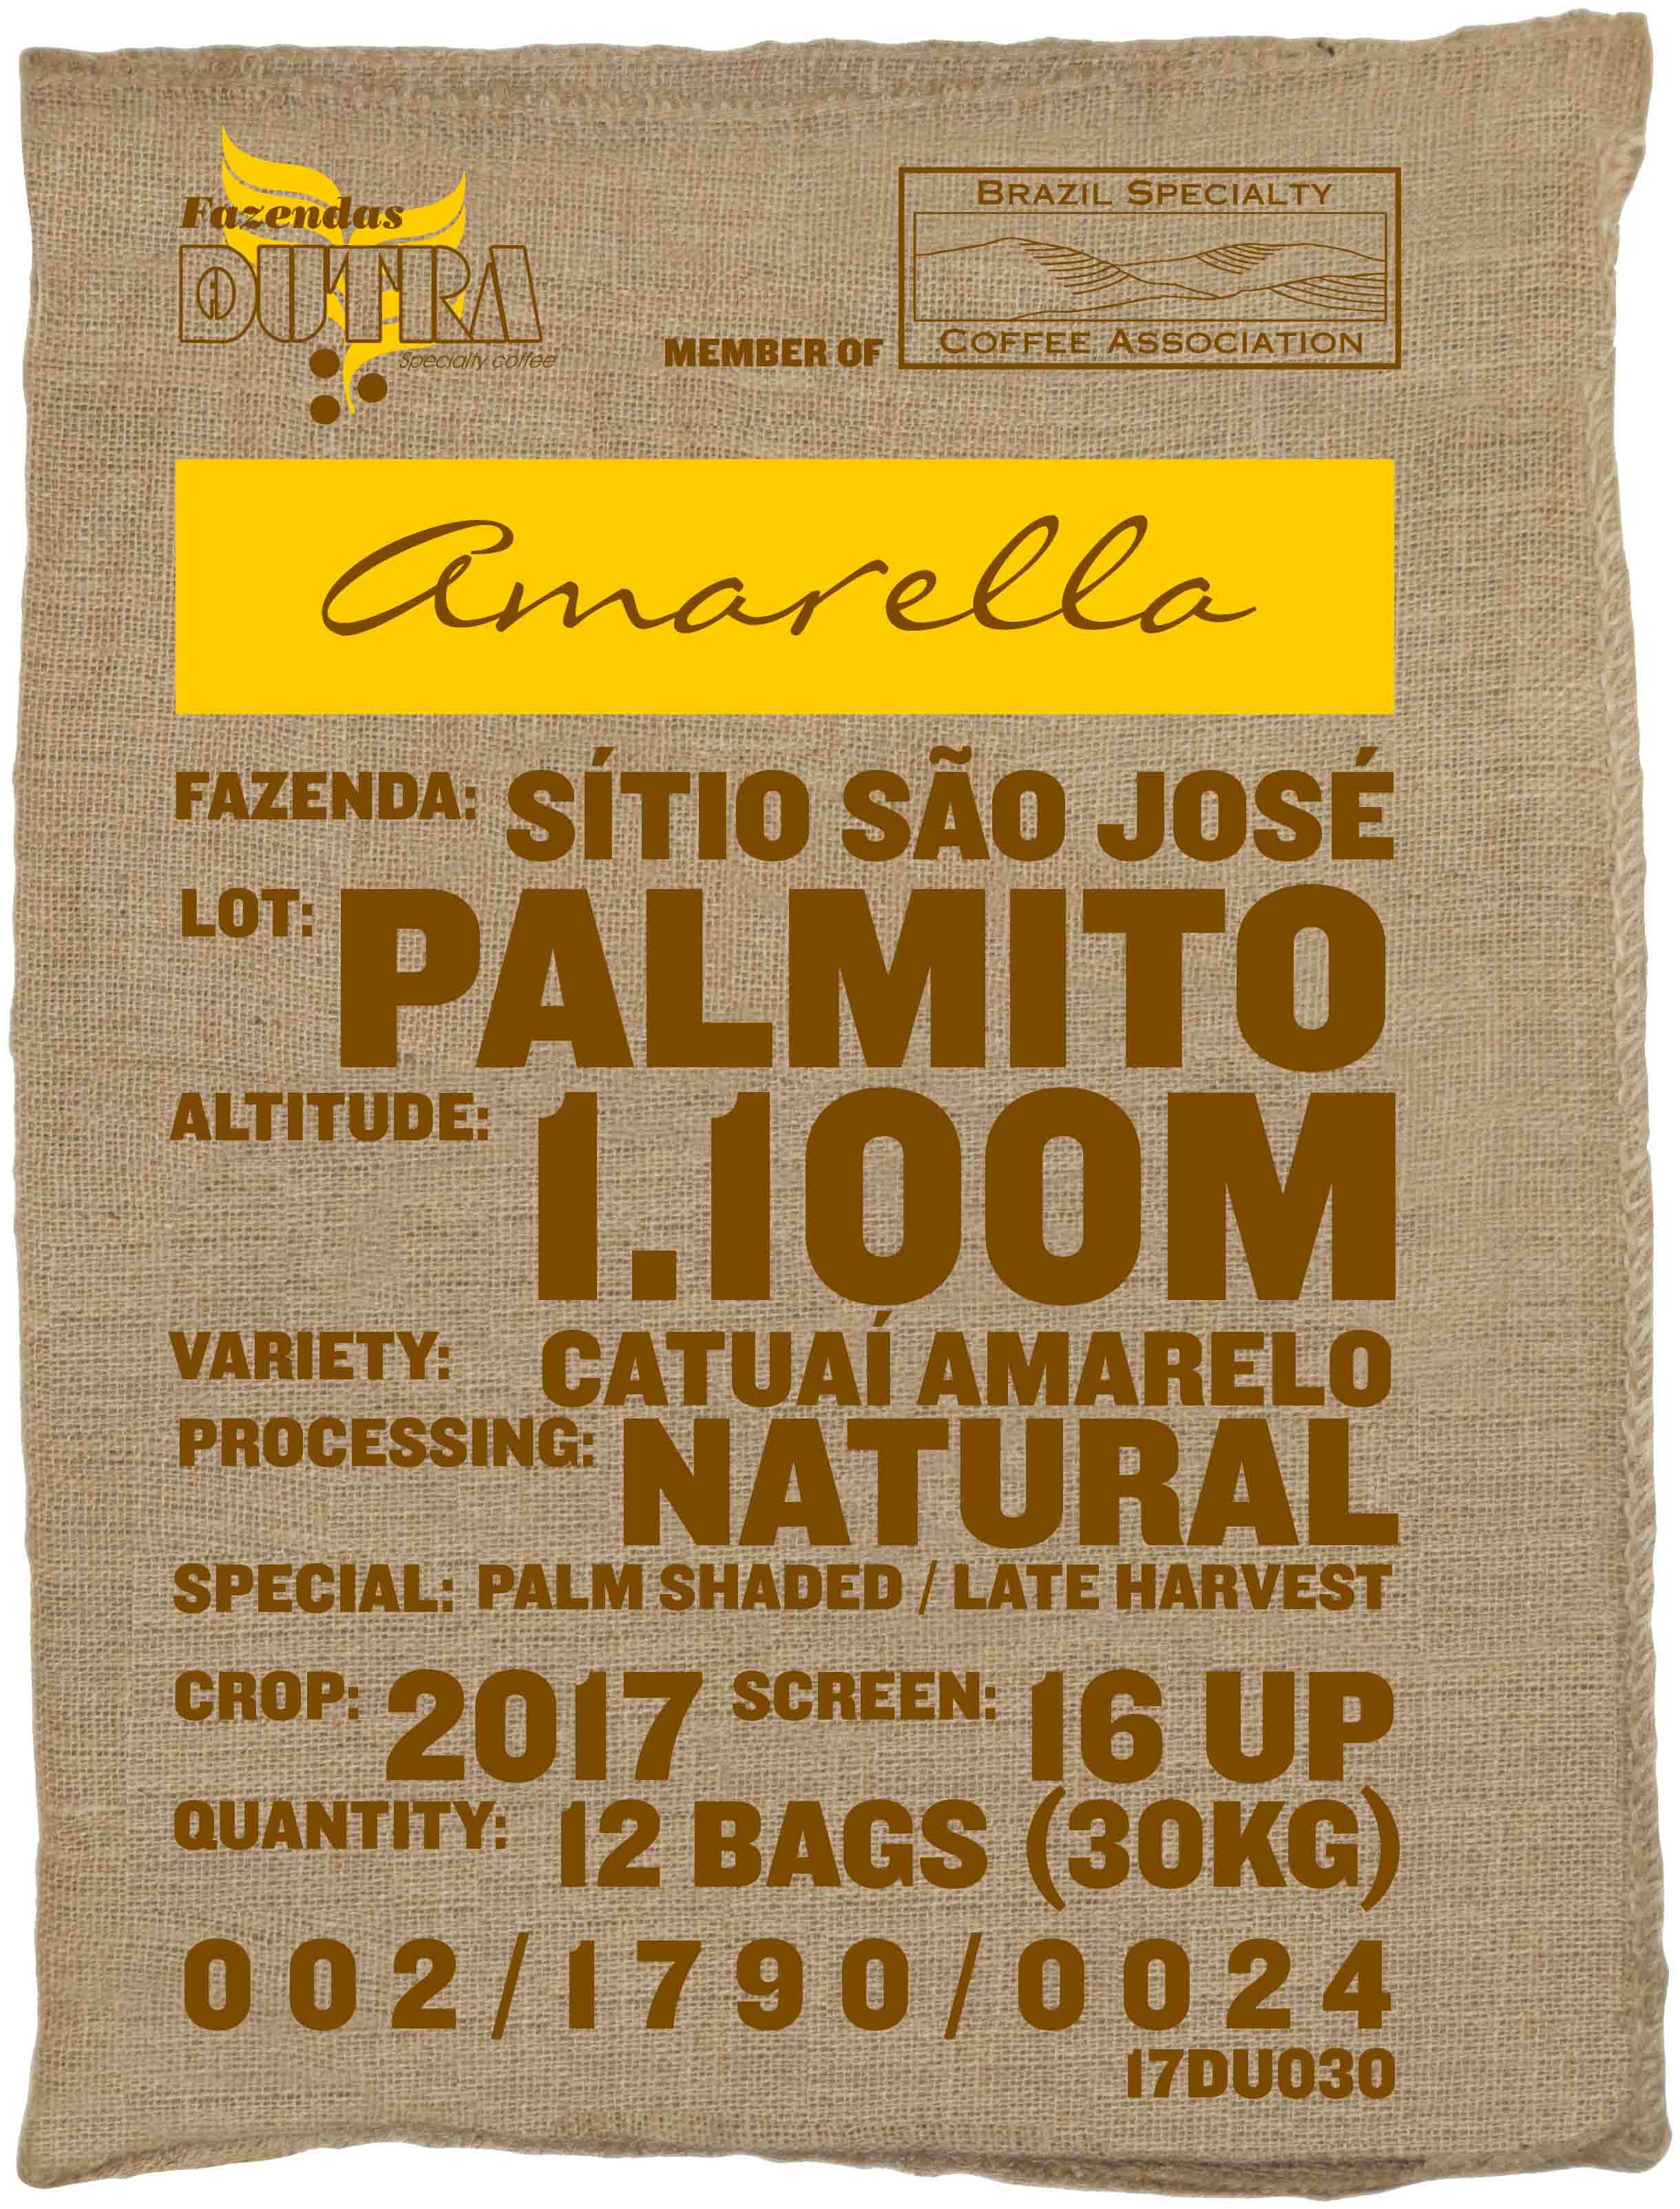 Ein Rohkaffeesack amarella Parzellenkaffee Varietät Catuai amarelo. Fazendas Dutra Lot Palmito.